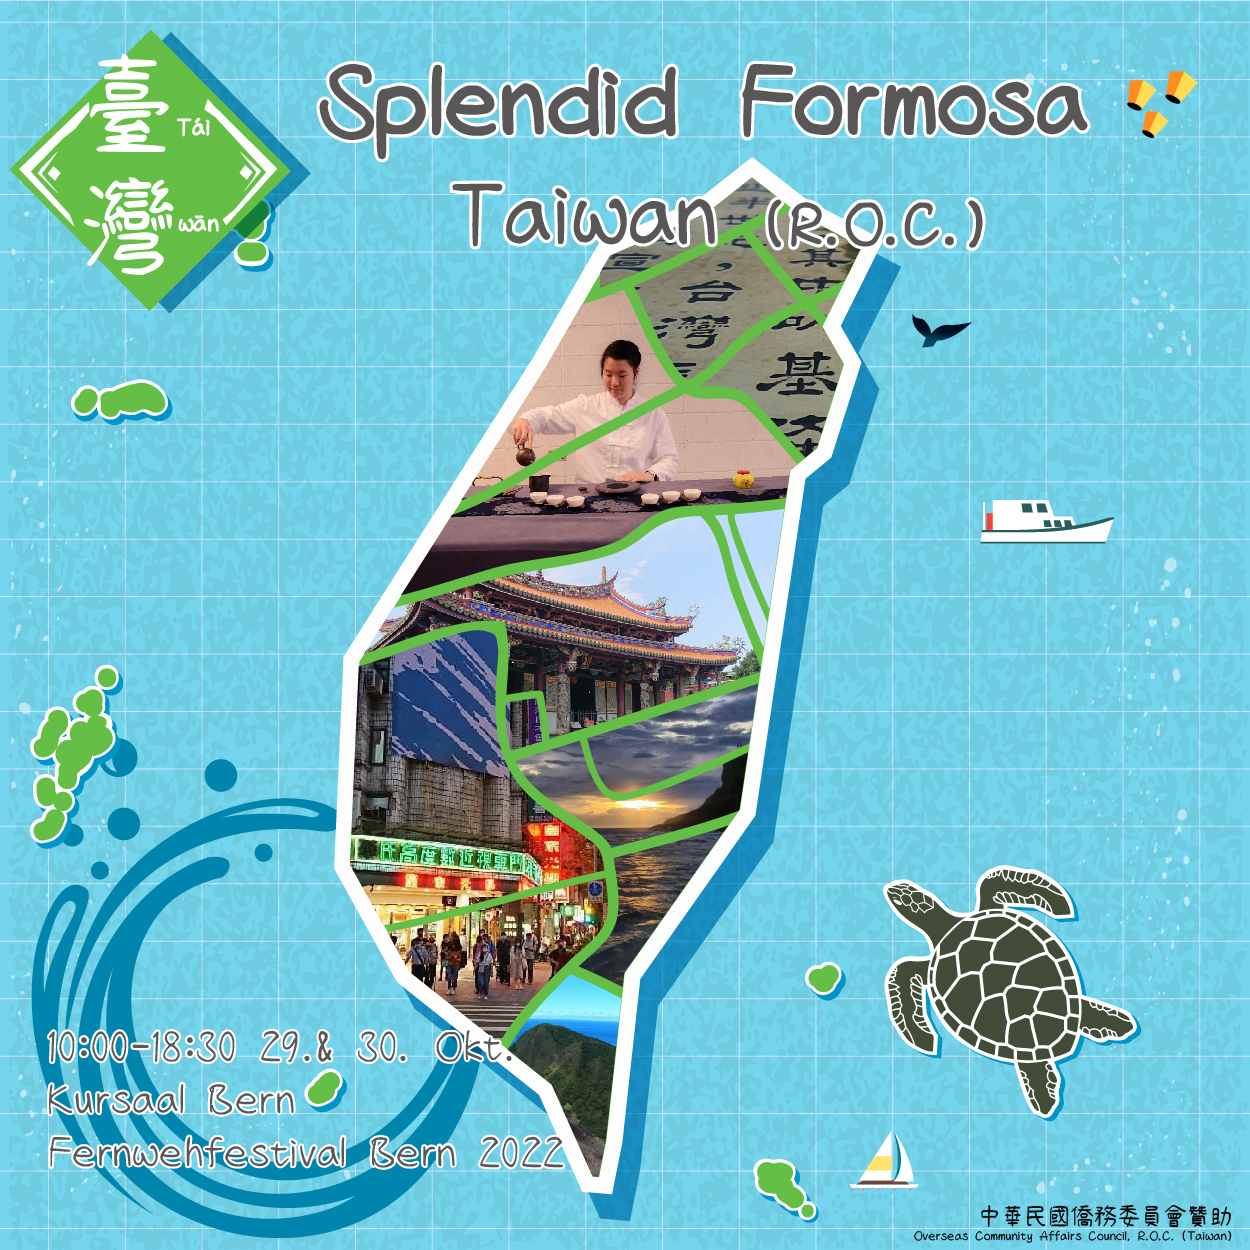 Délégation culturelle et économique de Taipei: Splendid Formosa